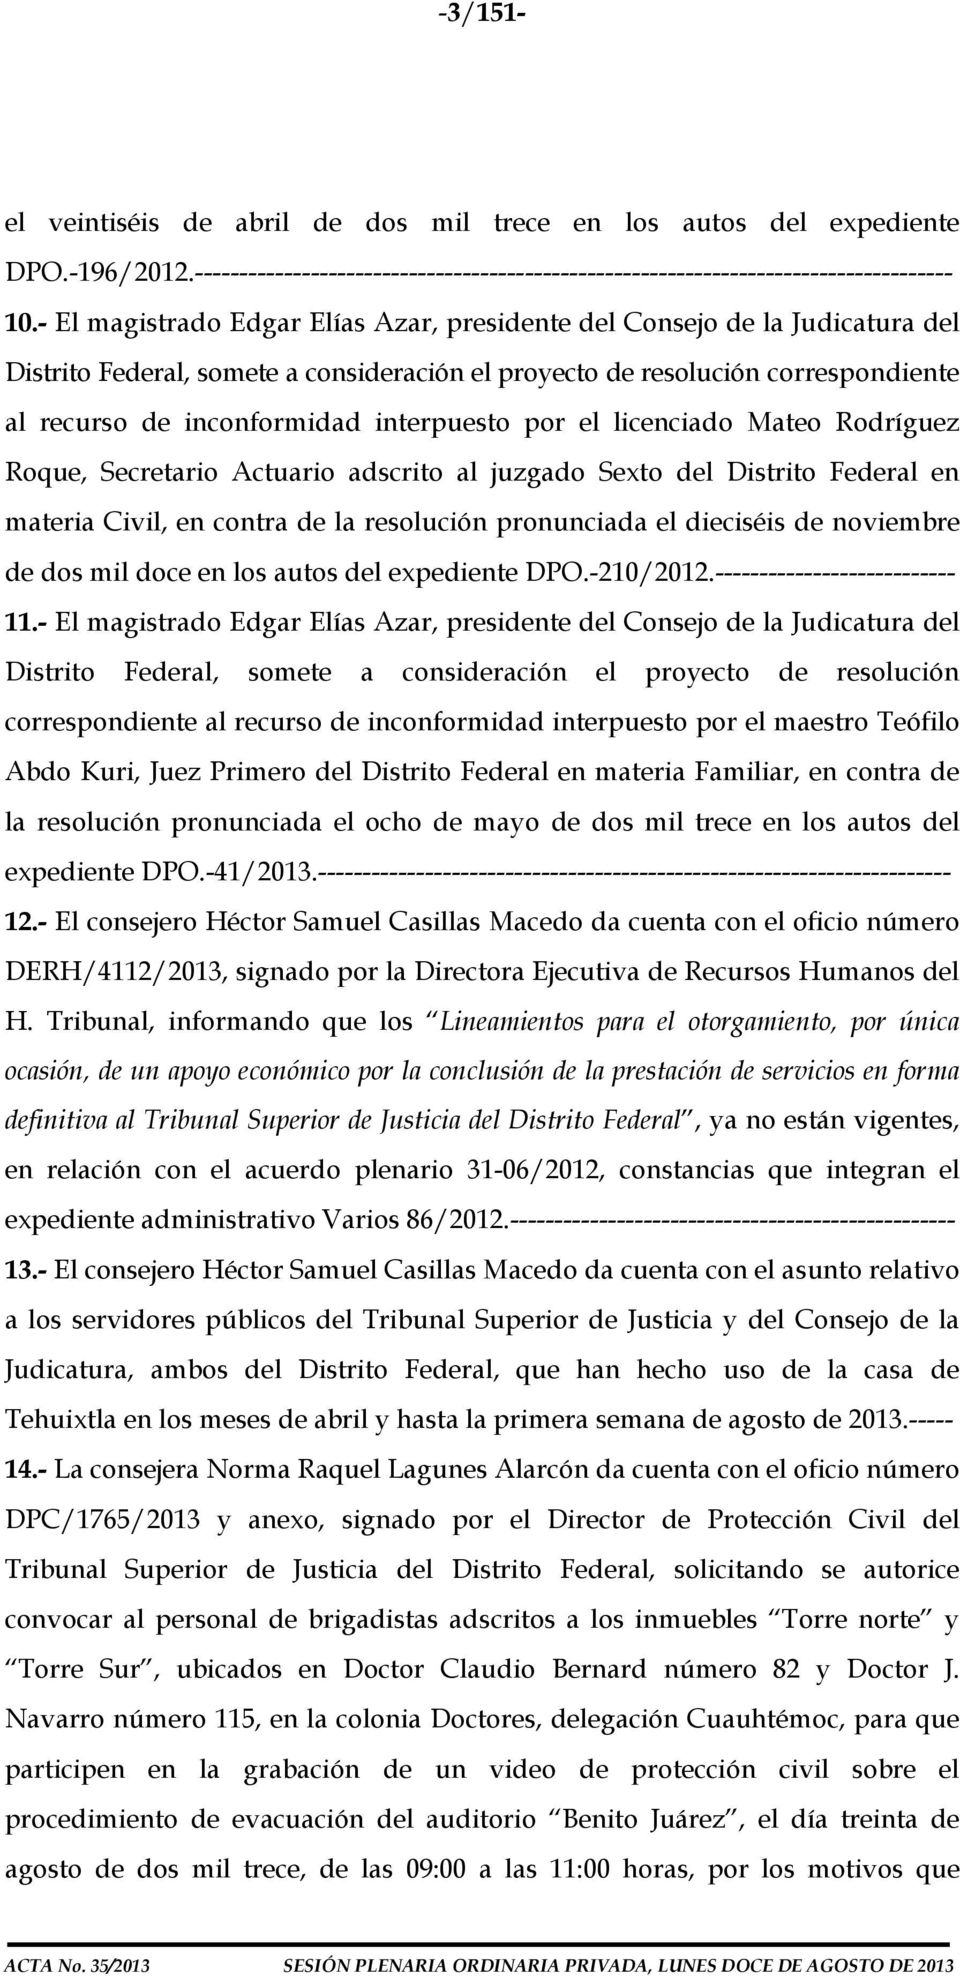 interpuesto por el licenciado Mateo Rodríguez Roque, Secretario Actuario adscrito al juzgado Sexto del Distrito Federal en materia Civil, en contra de la resolución pronunciada el dieciséis de